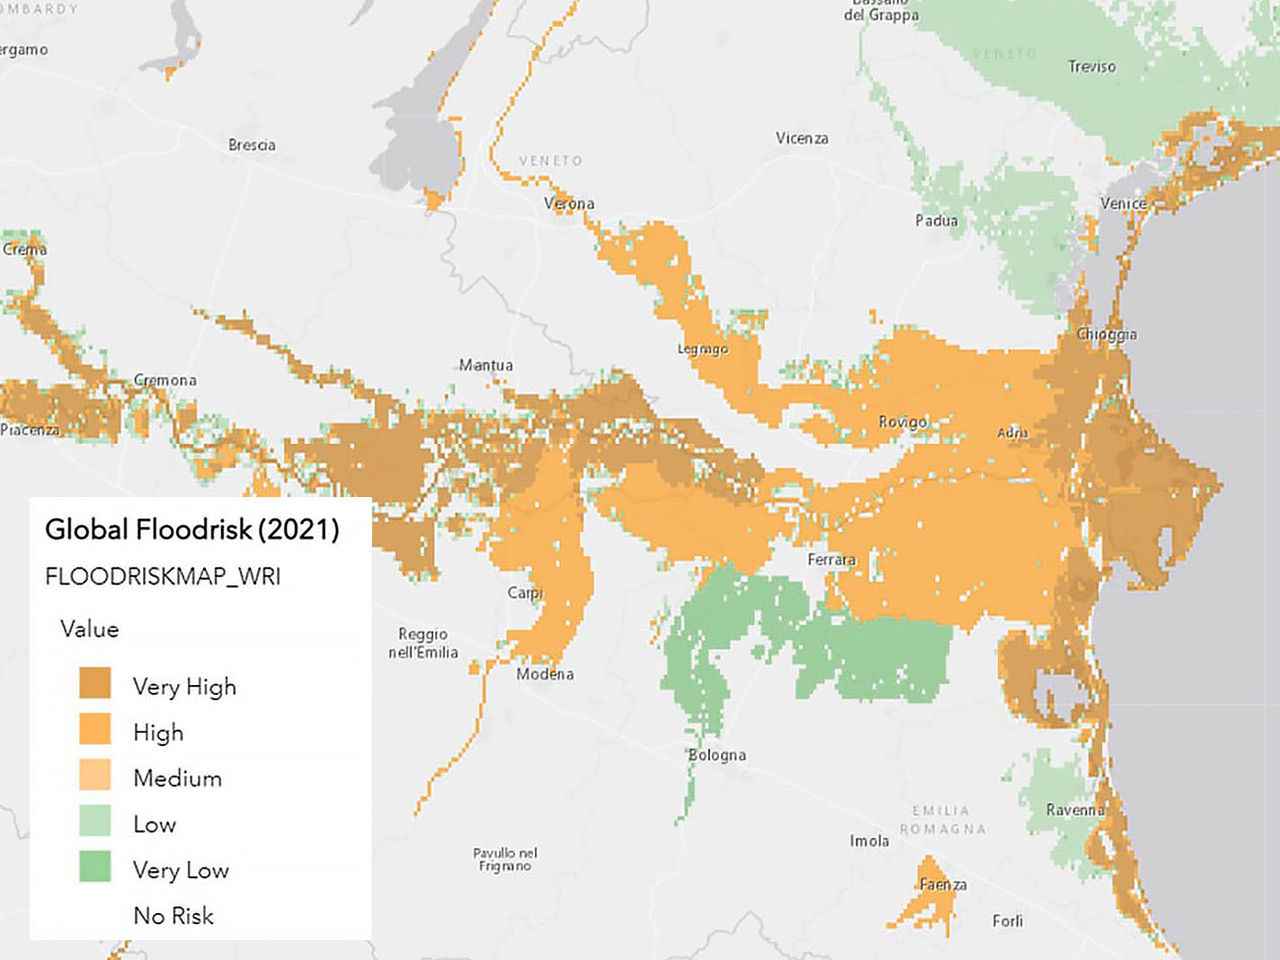 خريطة لمخاطر الفيضانات مرمزة بالألوان، وهي جزء من تقييم مخاطر المناخ